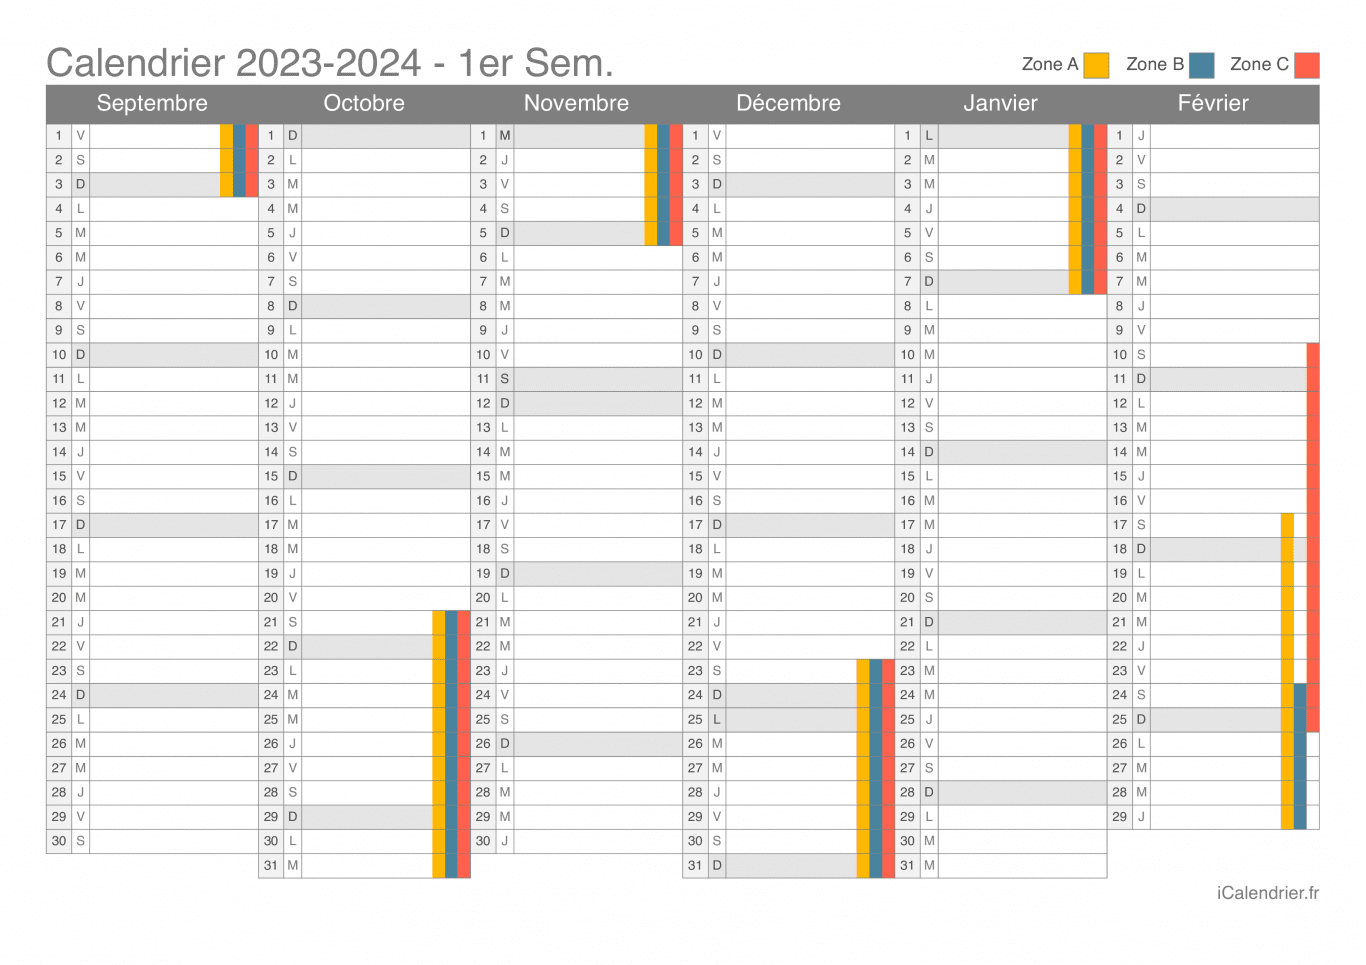 Calendrier des vacances scolaires 2023-2024 par semestre